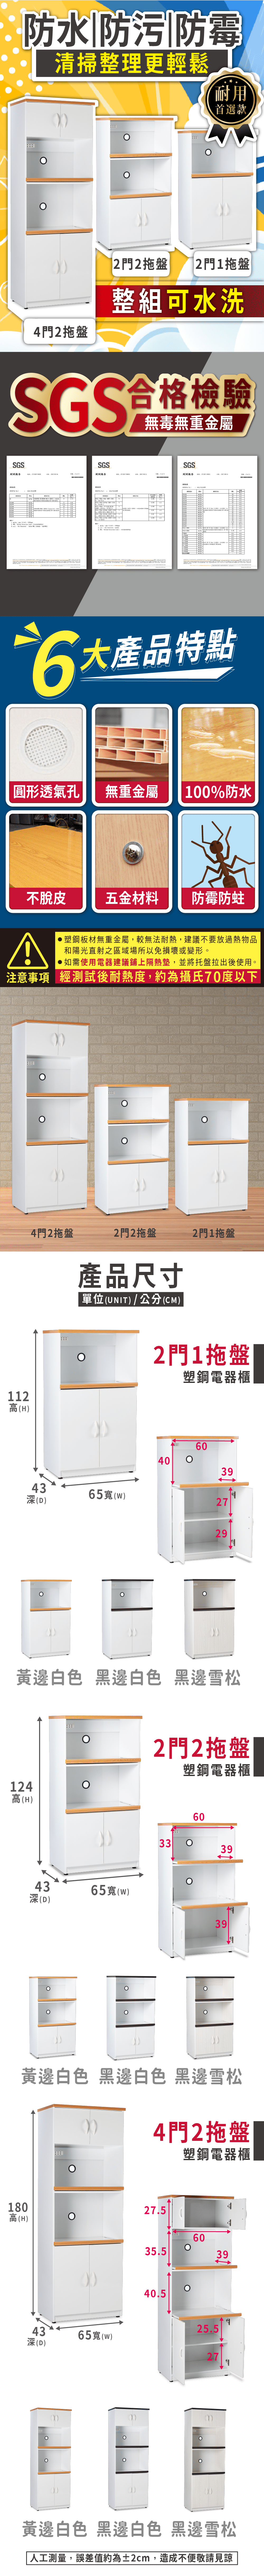       【BODEN】2.2尺二門二拉盤防水塑鋼電器櫃/收納餐櫃(白色)